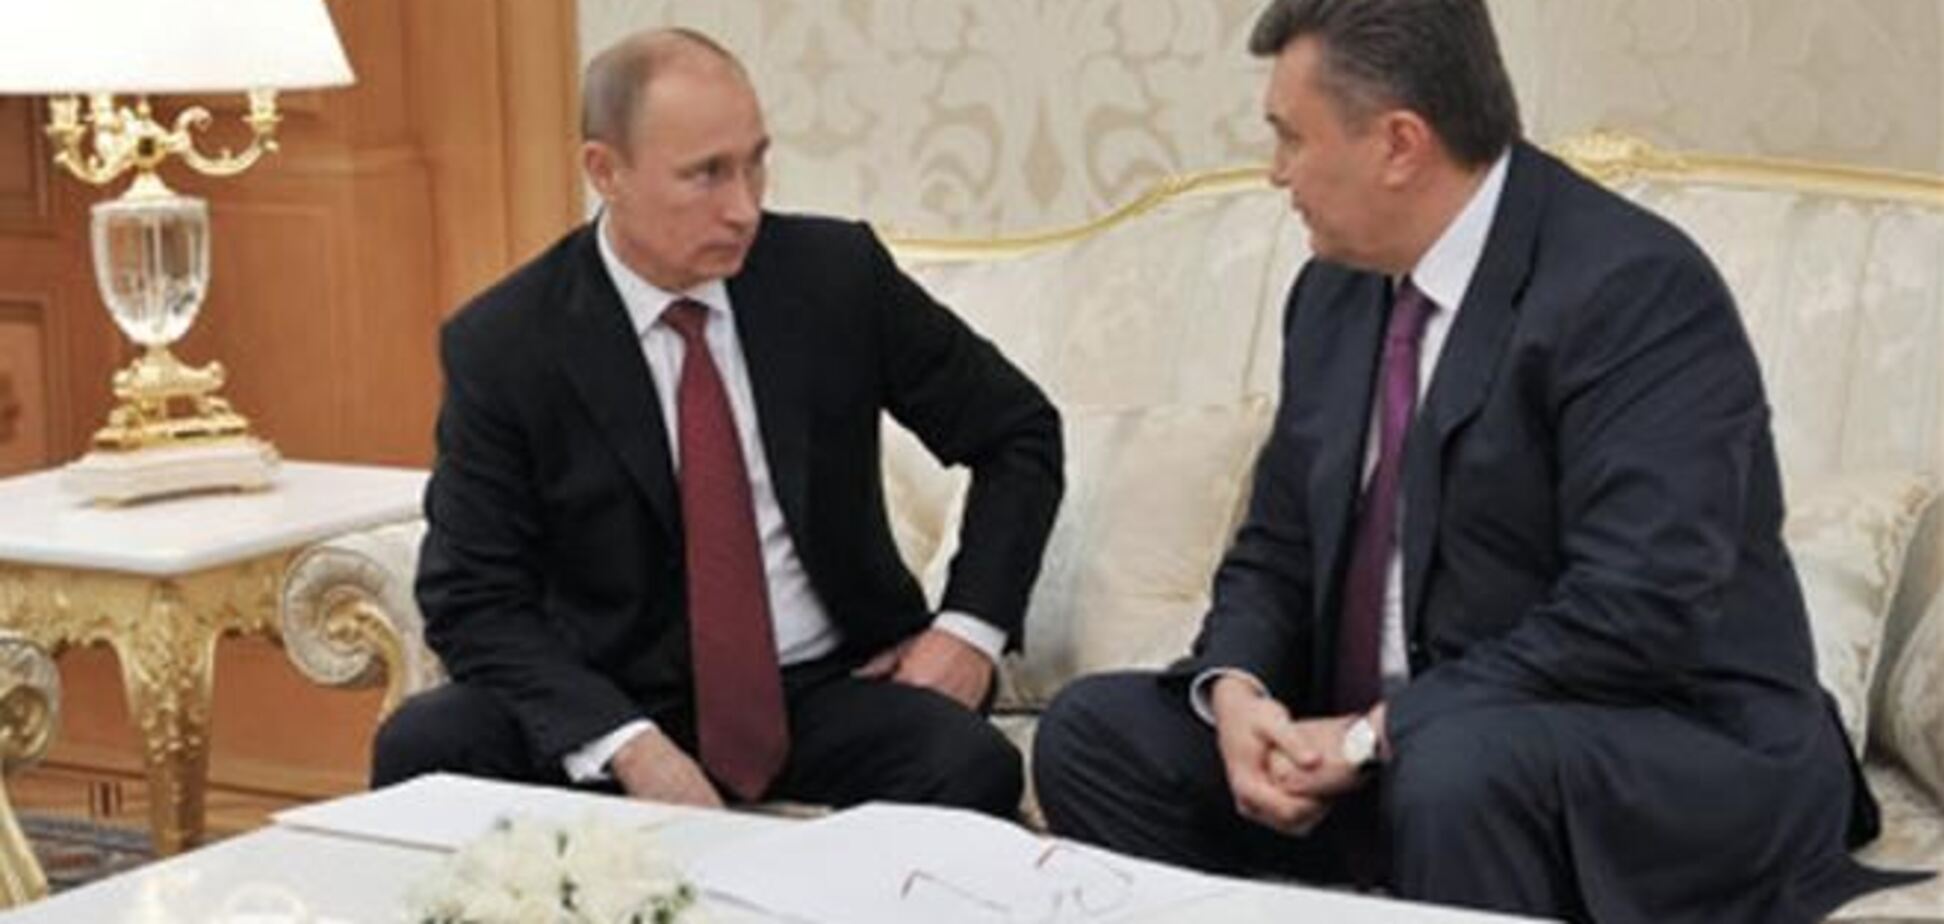 Путин предложит Януковичу кредит на $10 млрд в обмен на евроинтеграцию - СМИ